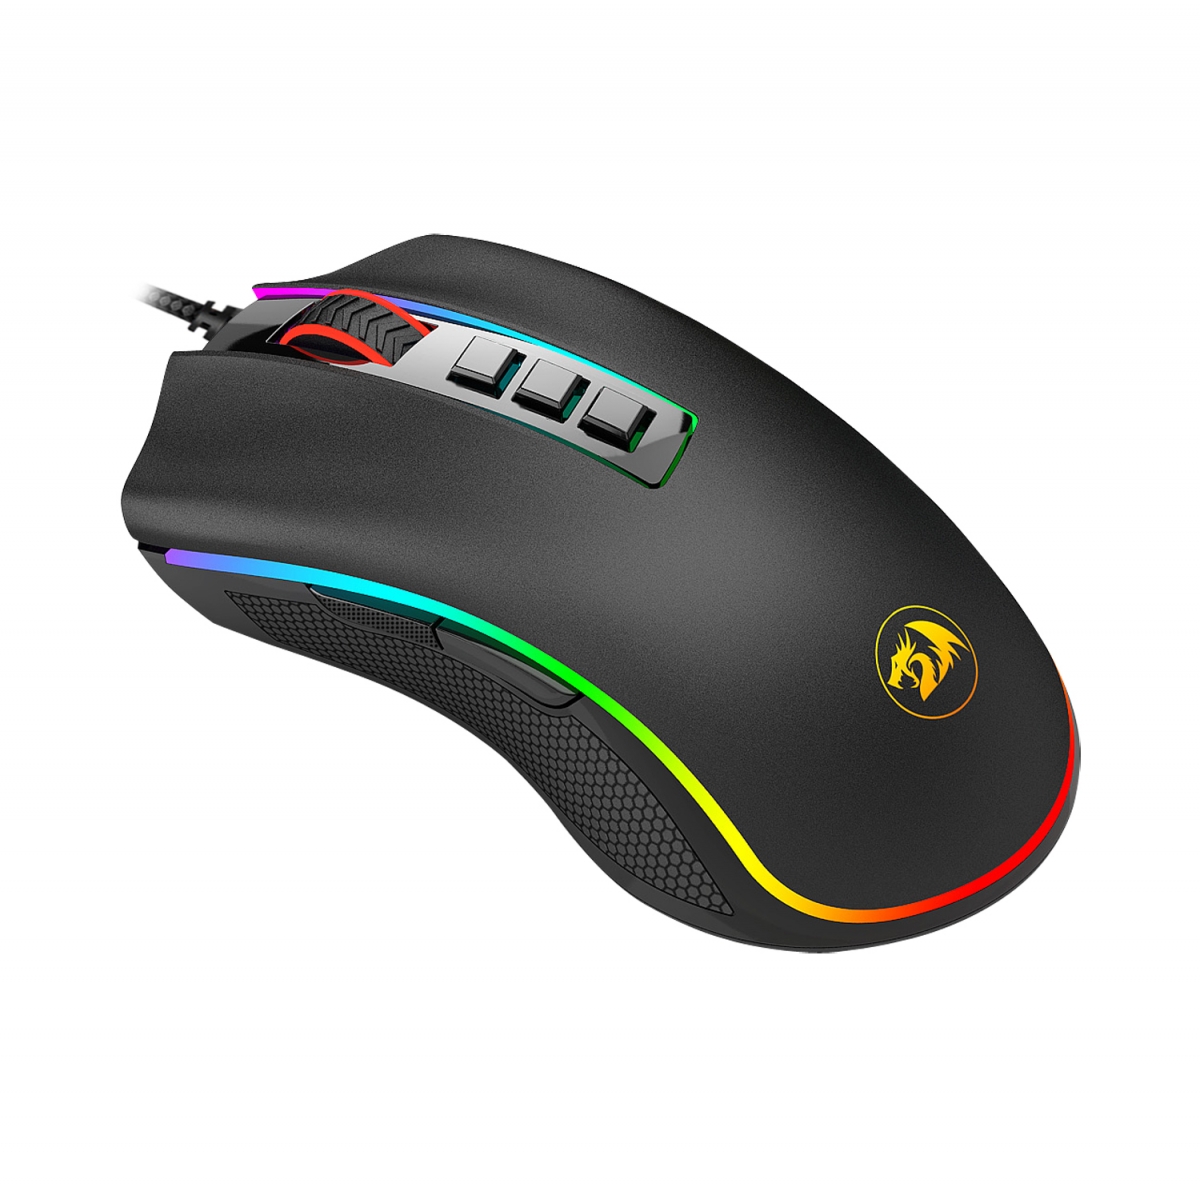 Mouse Gamer Redragon Cobra V2 RGB, 12400 DPI, 8 Botões Programáveis, Black, M711 V2